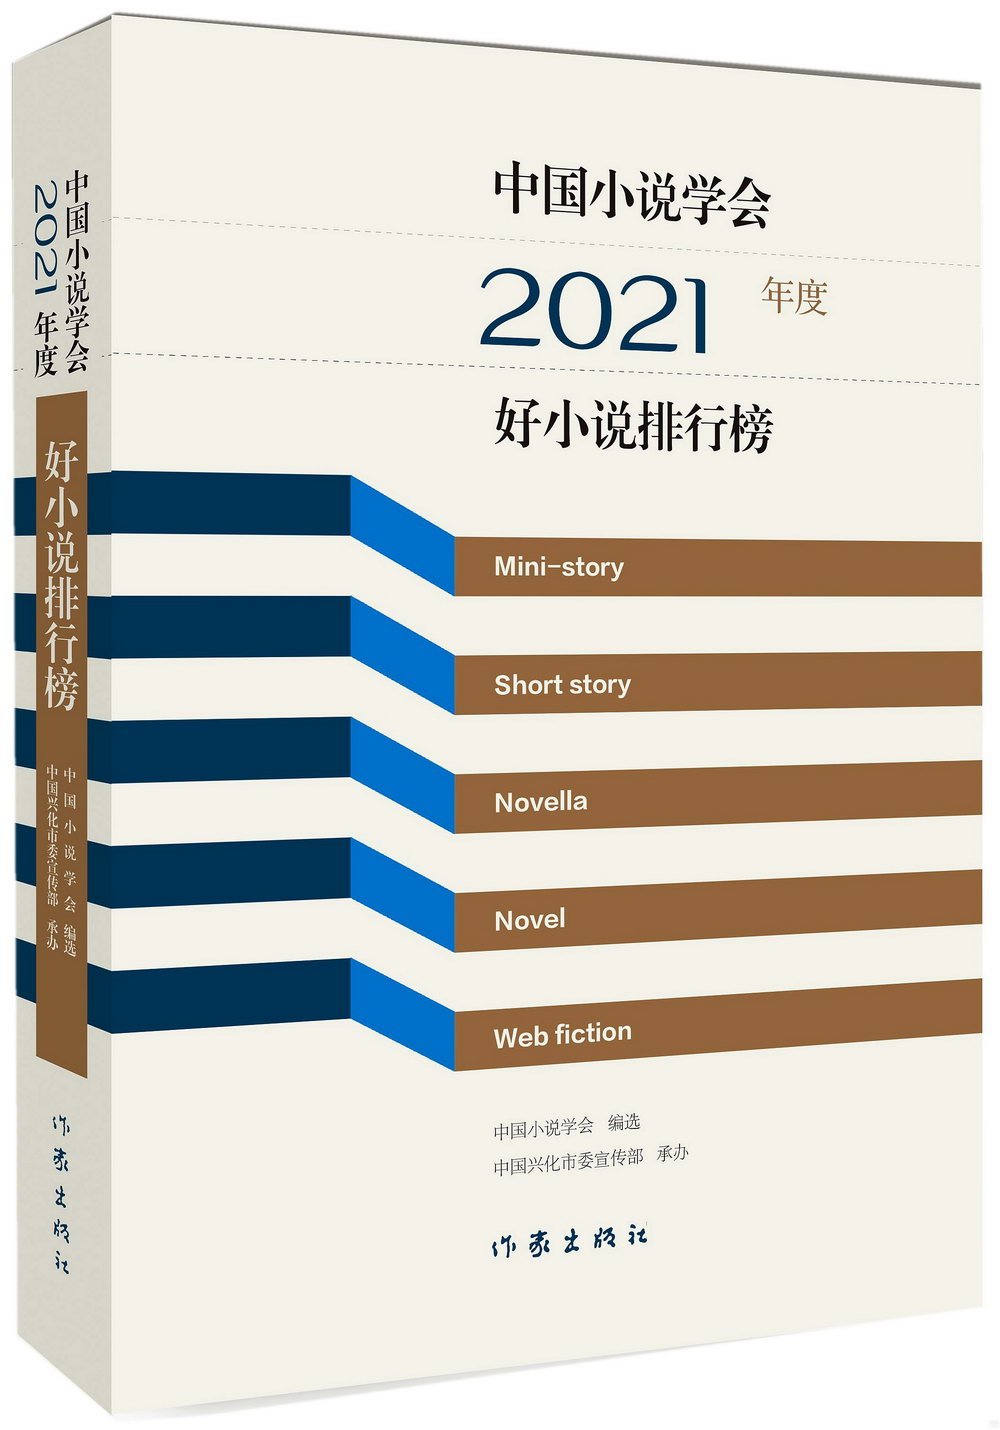 中國小說學會2021年度好小說排行榜